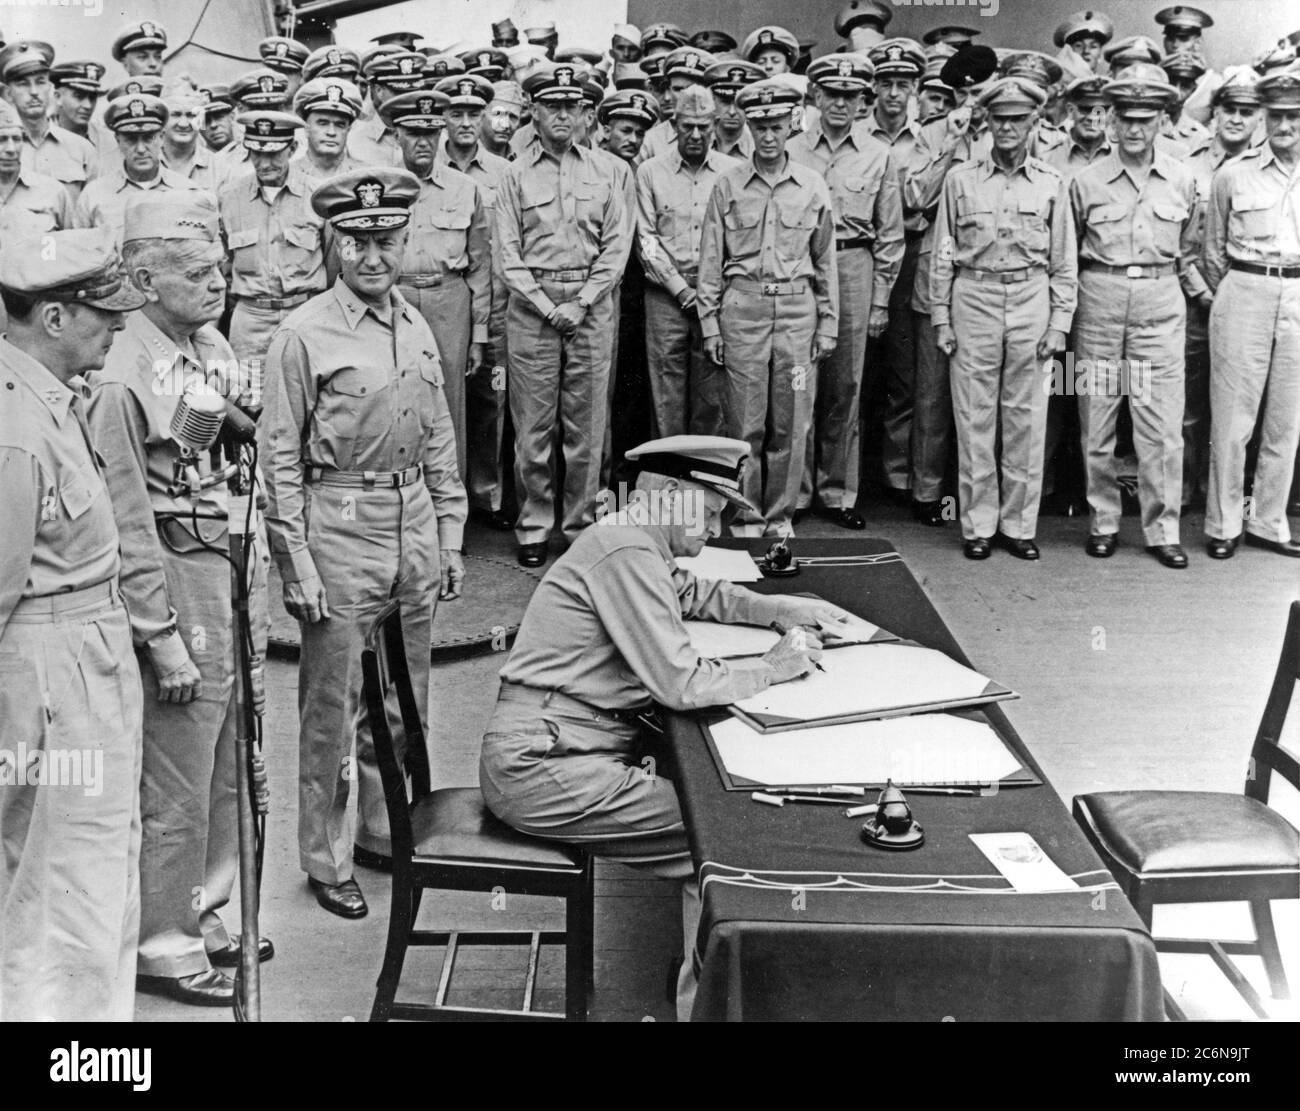 Consegna del Giappone, Baia di Tokyo, 2 settembre 1945. ADM flotta. Chester W. Nimitz, Marina degli Stati Uniti, firma lo strumento di resa come rappresentante degli Stati Uniti, a bordo della USS Missouri (BB-63), 2 settembre 1945. Dietro di lui si trovano (da sinistra a destra): Generale dell'esercito Gen. Douglas MacArthur; ADM. William F. Halsey, U.S. Navy e posteriore ADM. Forrest Sherman, Marina degli Stati Uniti. (STATI UNITI Foto blu, Foto n.: 80-G-701293) Foto Stock